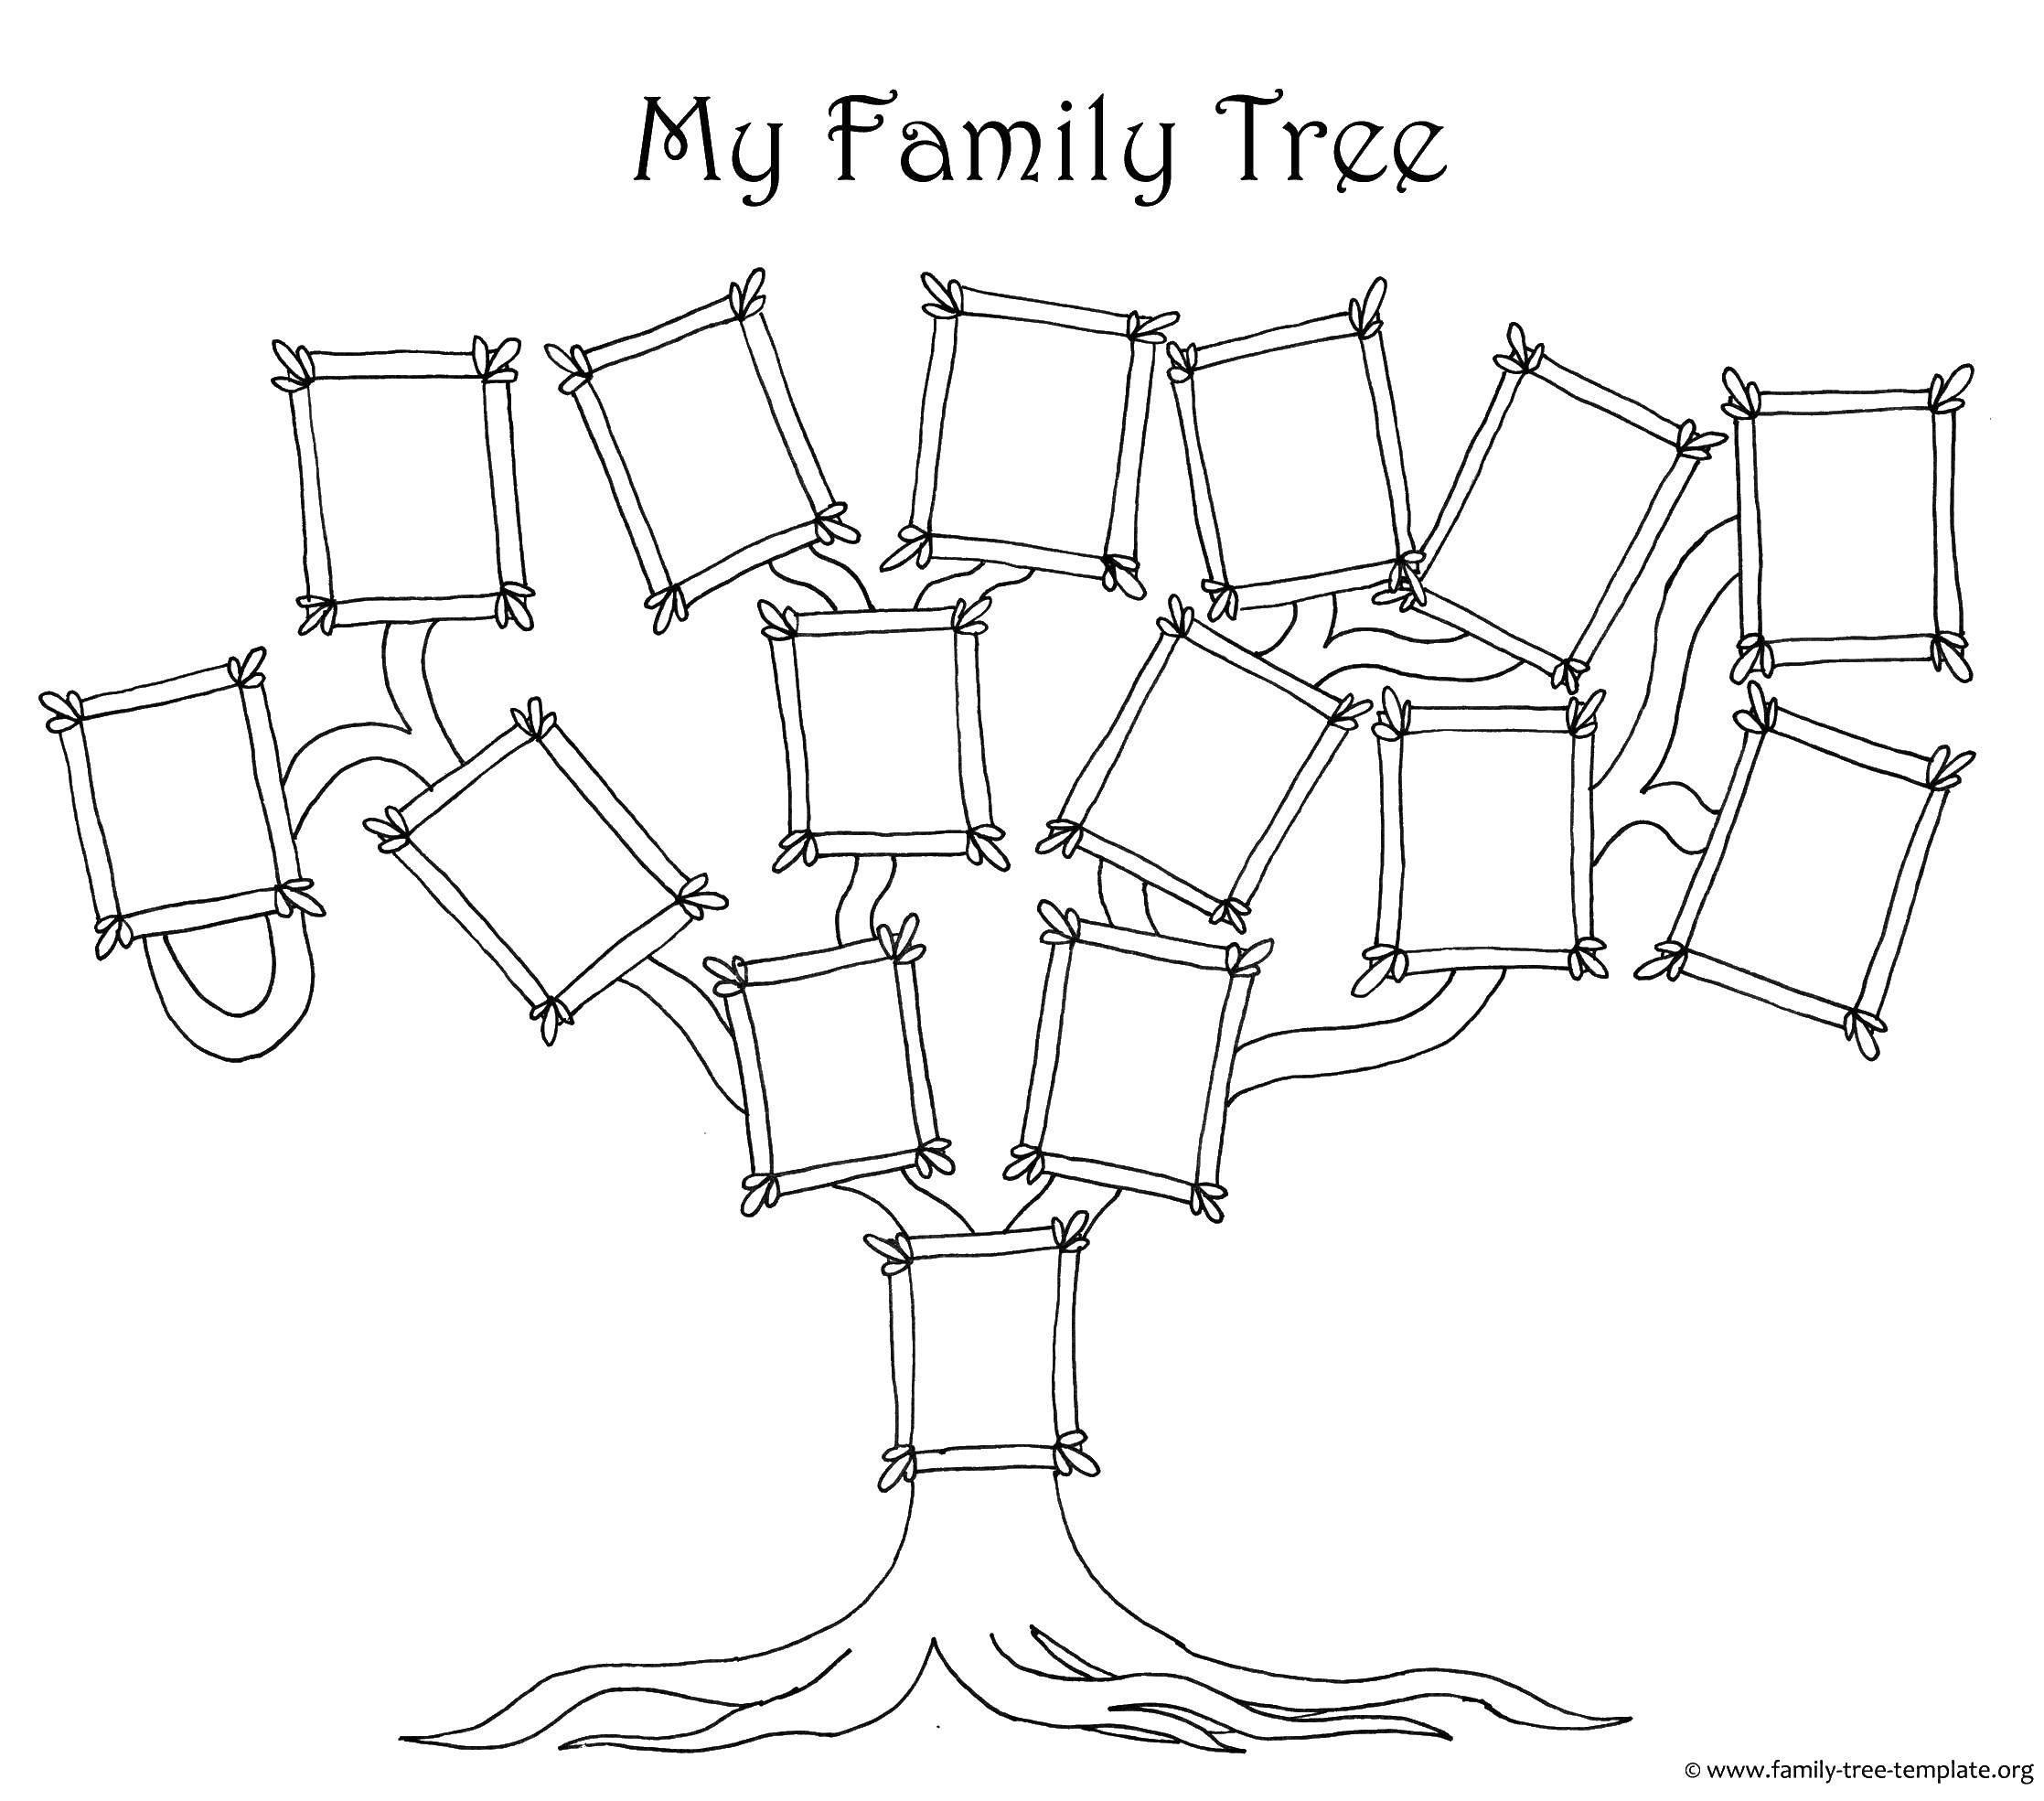 Название: Раскраска Семейное дерево. Категория: Семейное дерево. Теги: семейное дерево, рамки.